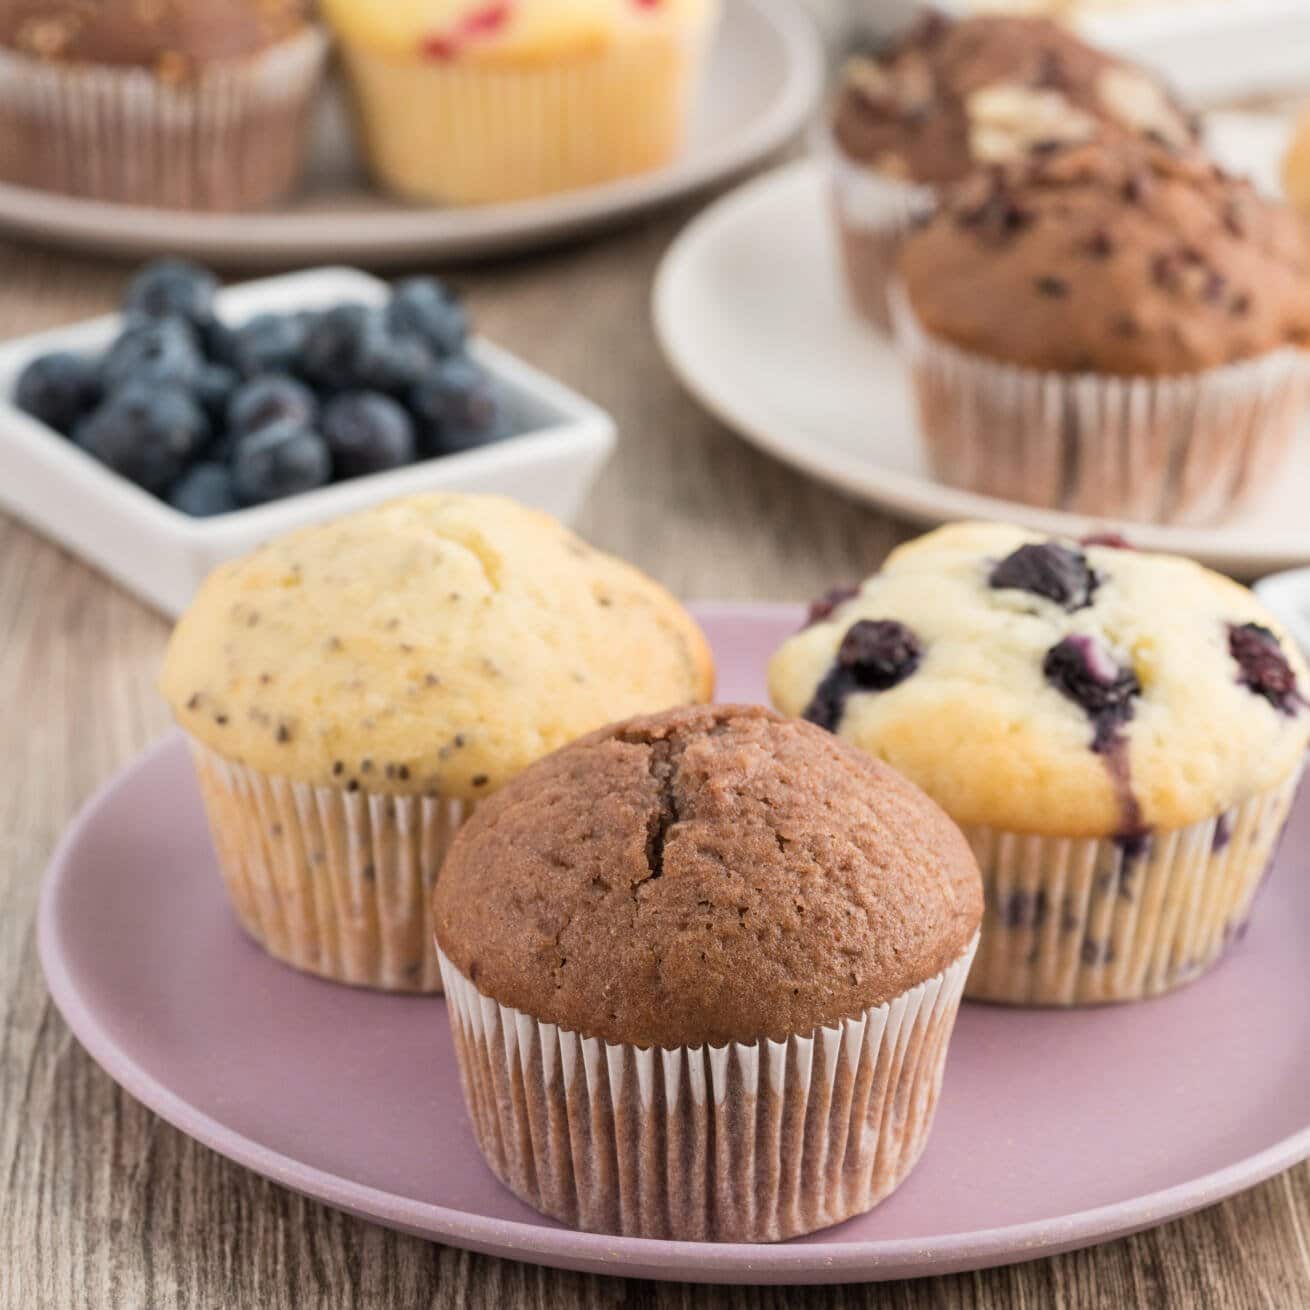 Muffins Grundrezept mit Tipps | Backen macht glücklich